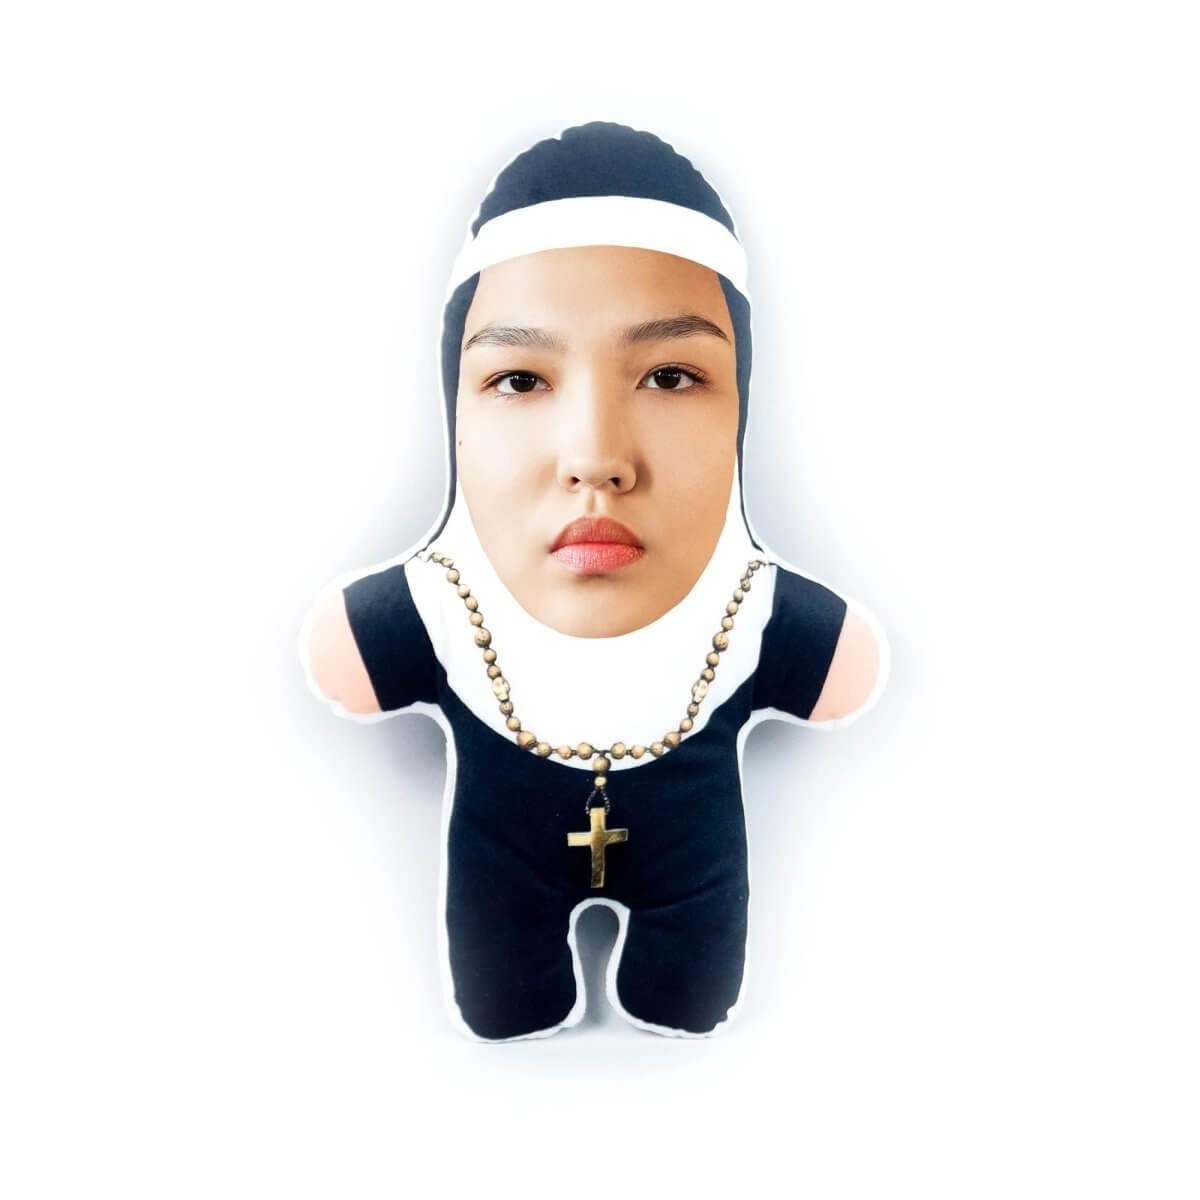 Personalisierbare Mini Me Doll Nonne - Dein Lieblingskissen - Personalisierte Formkissen